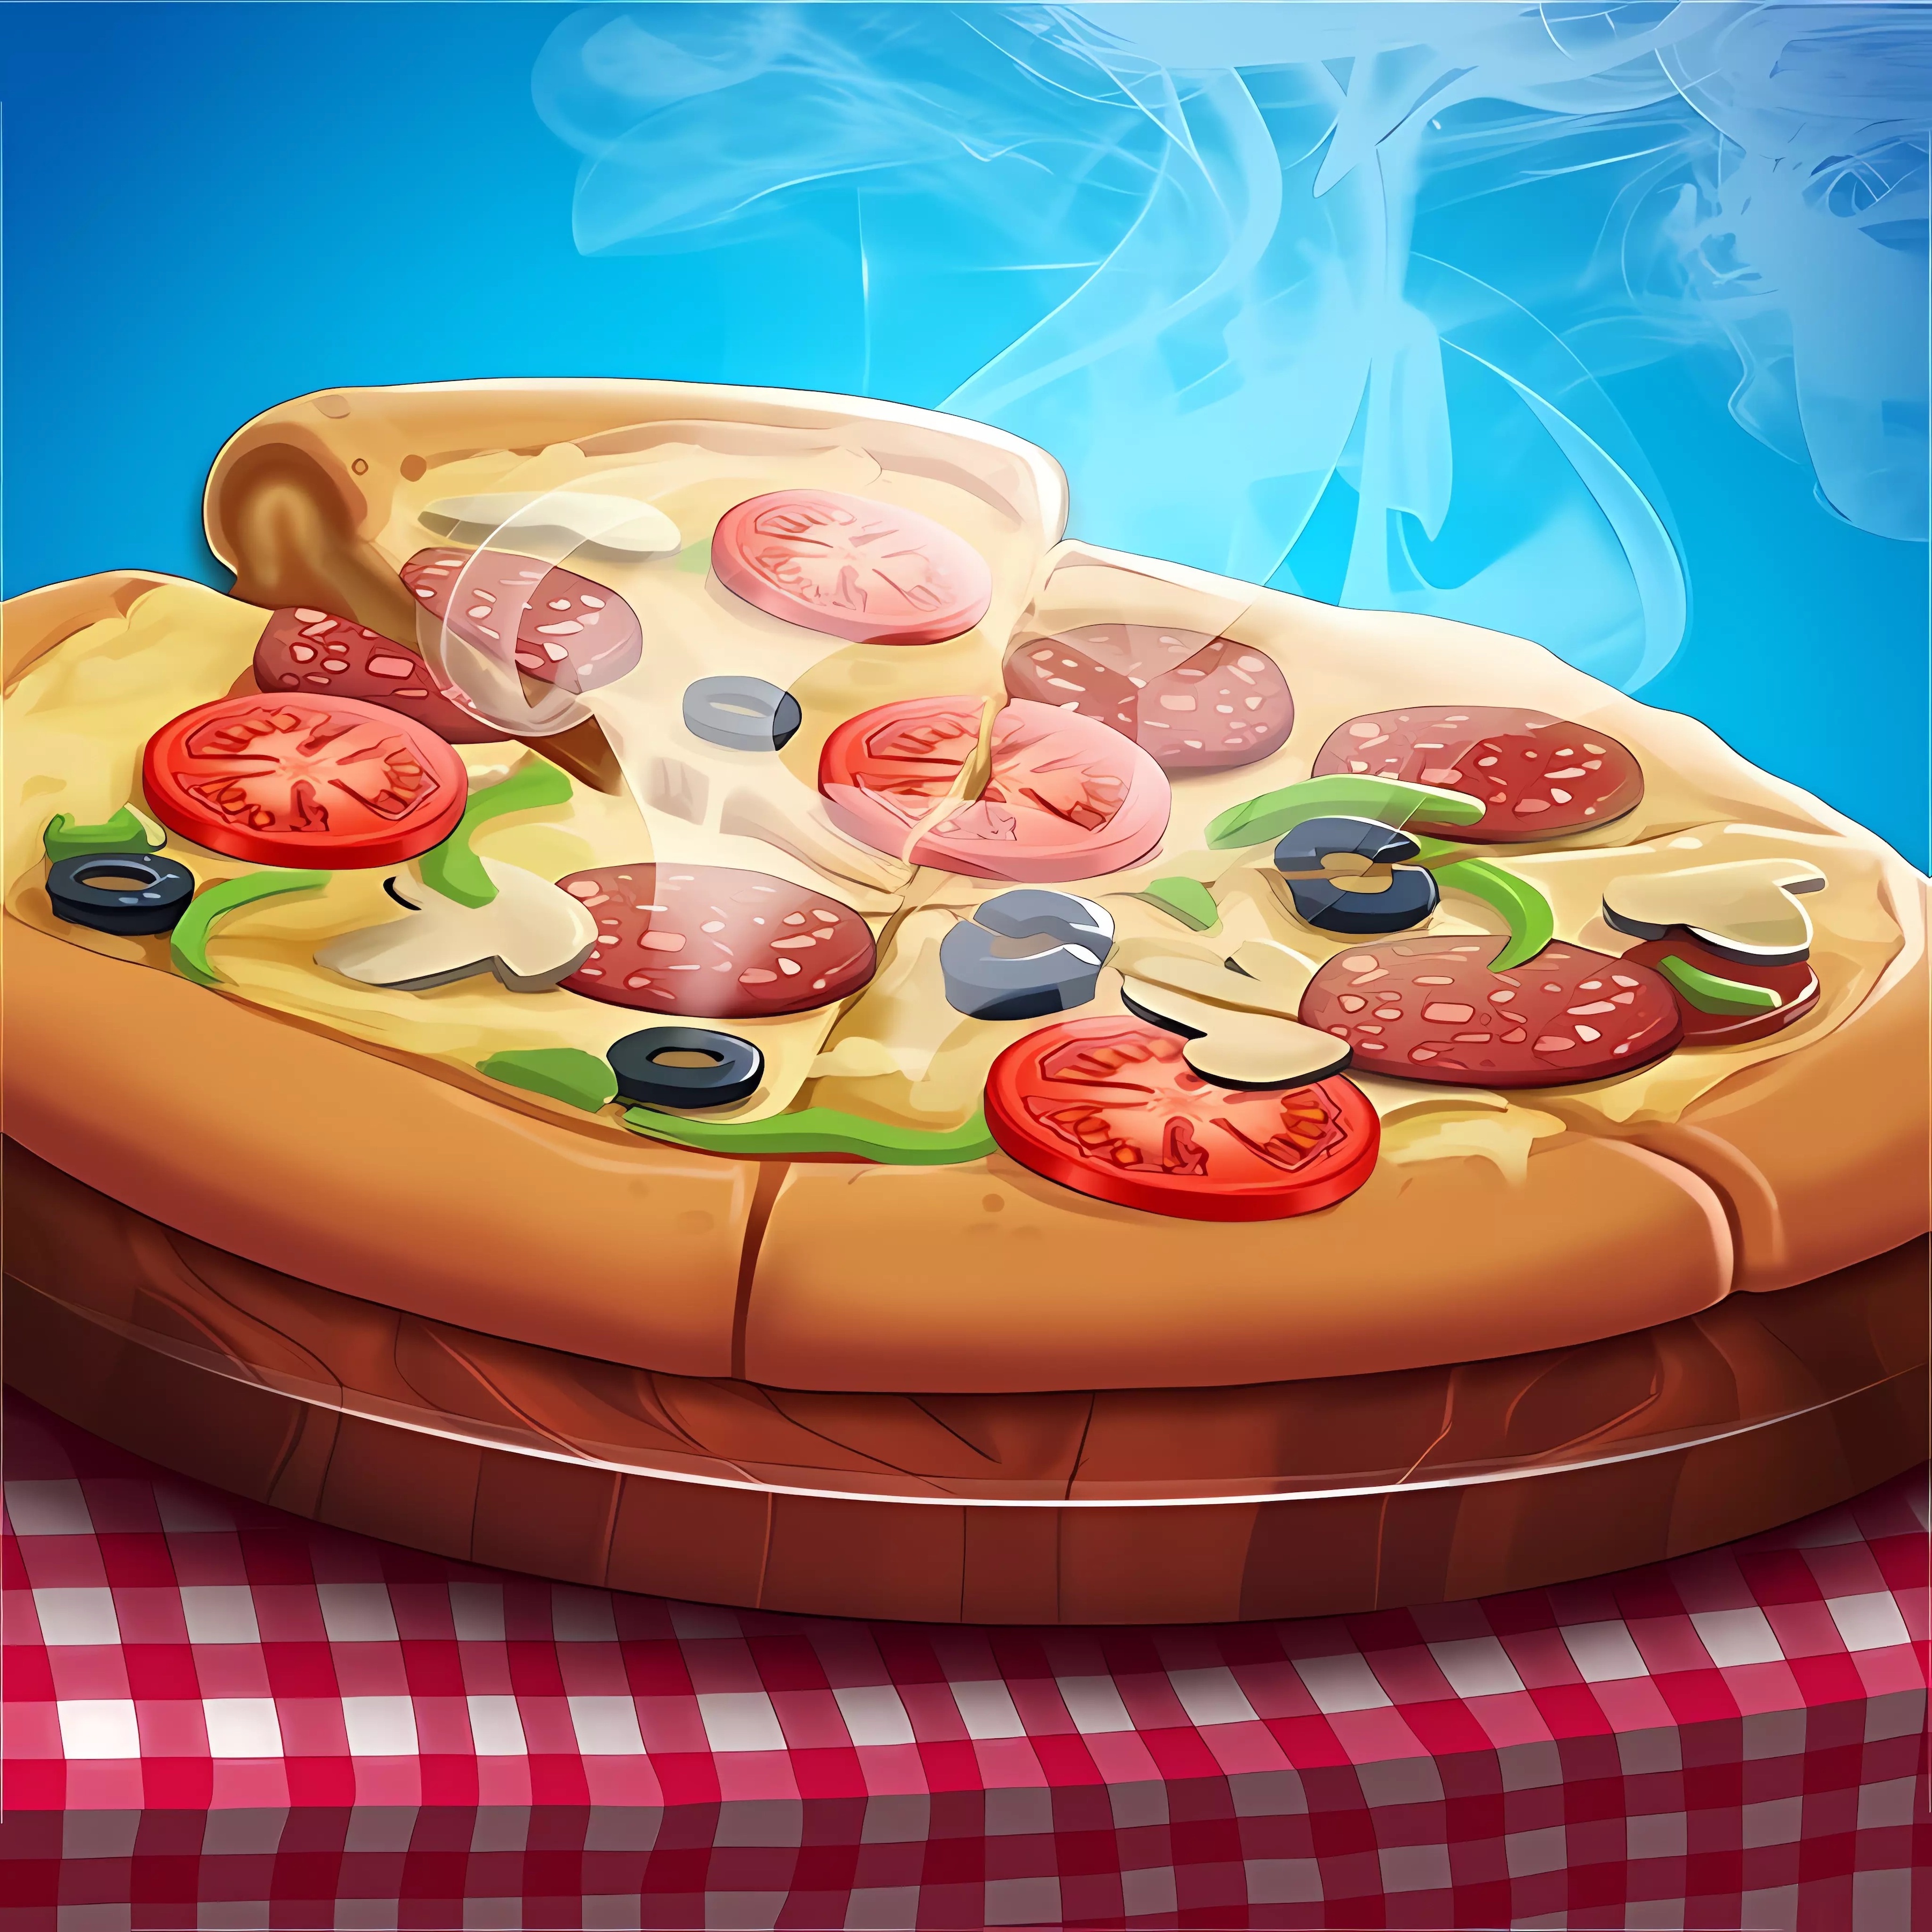 игра пицца скачать бесплатно на андроид последняя версия фото 80